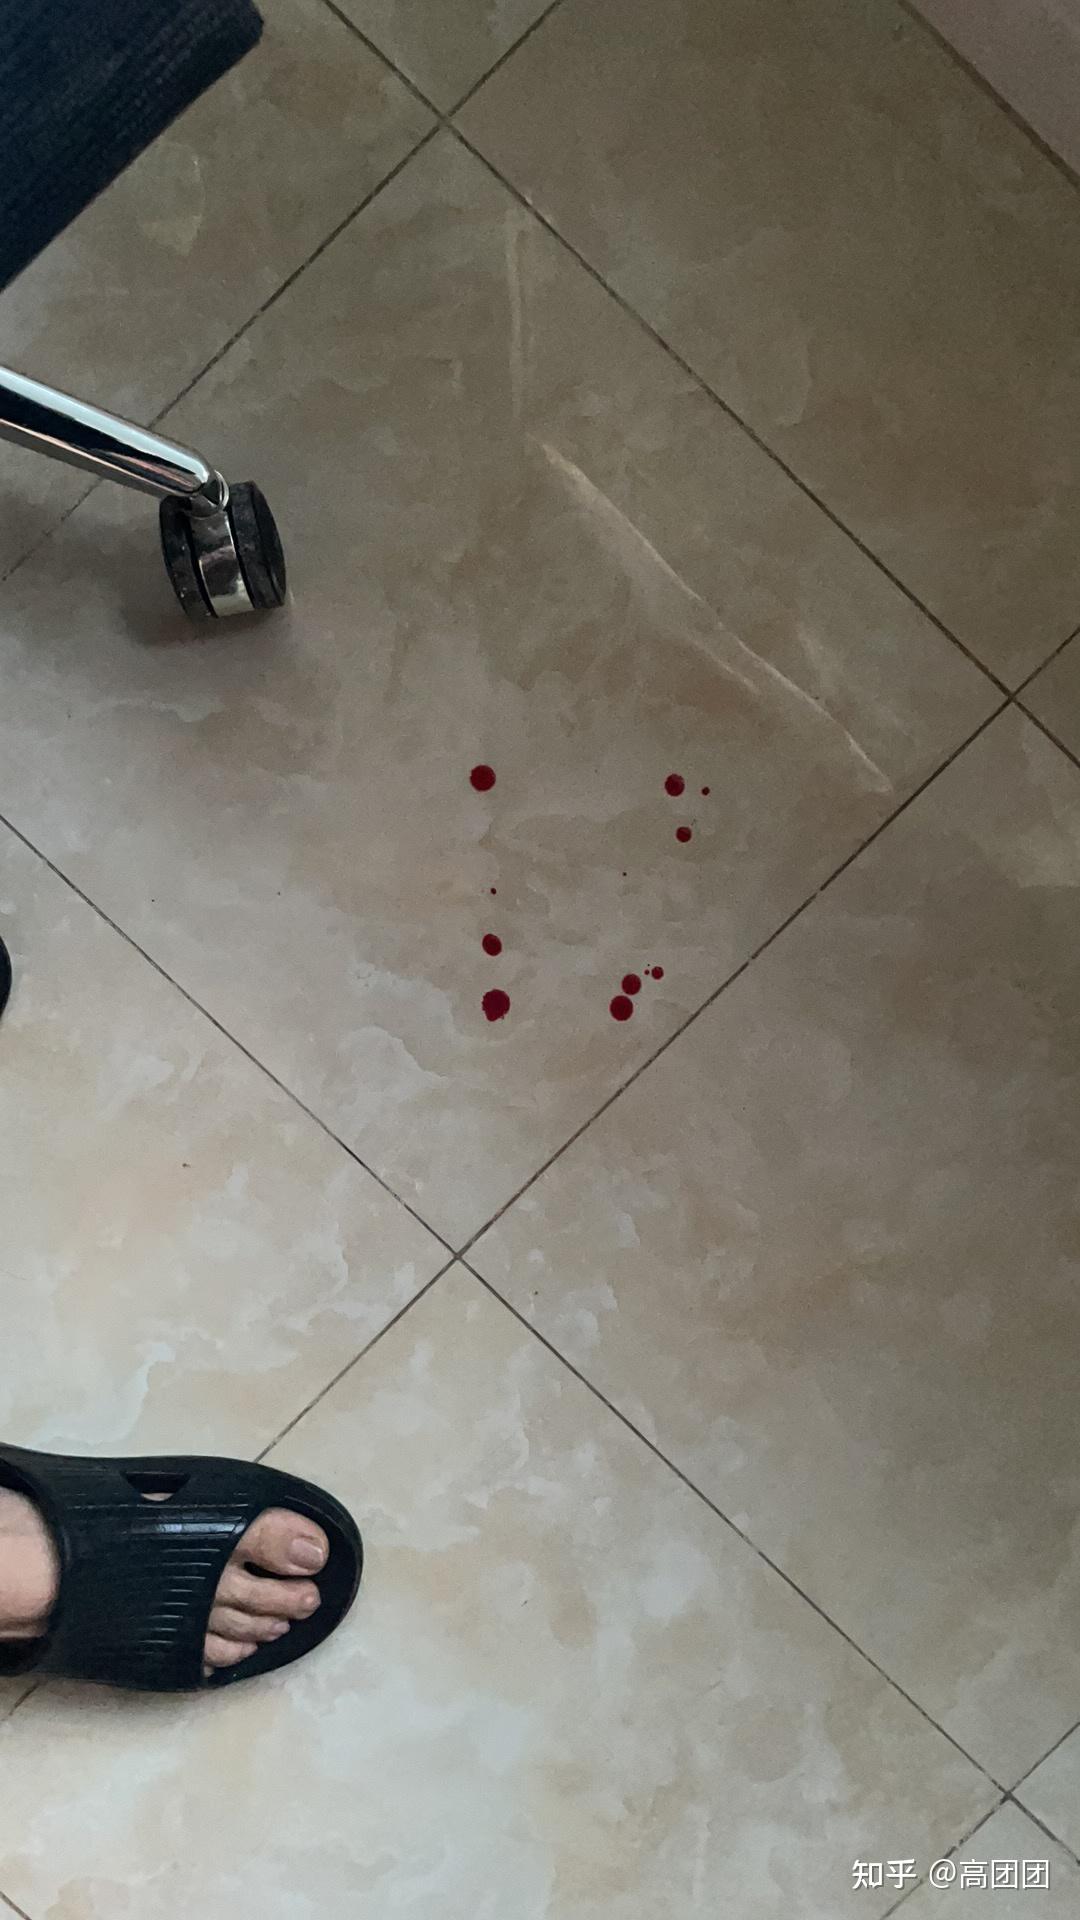 血流在地板的图片图片